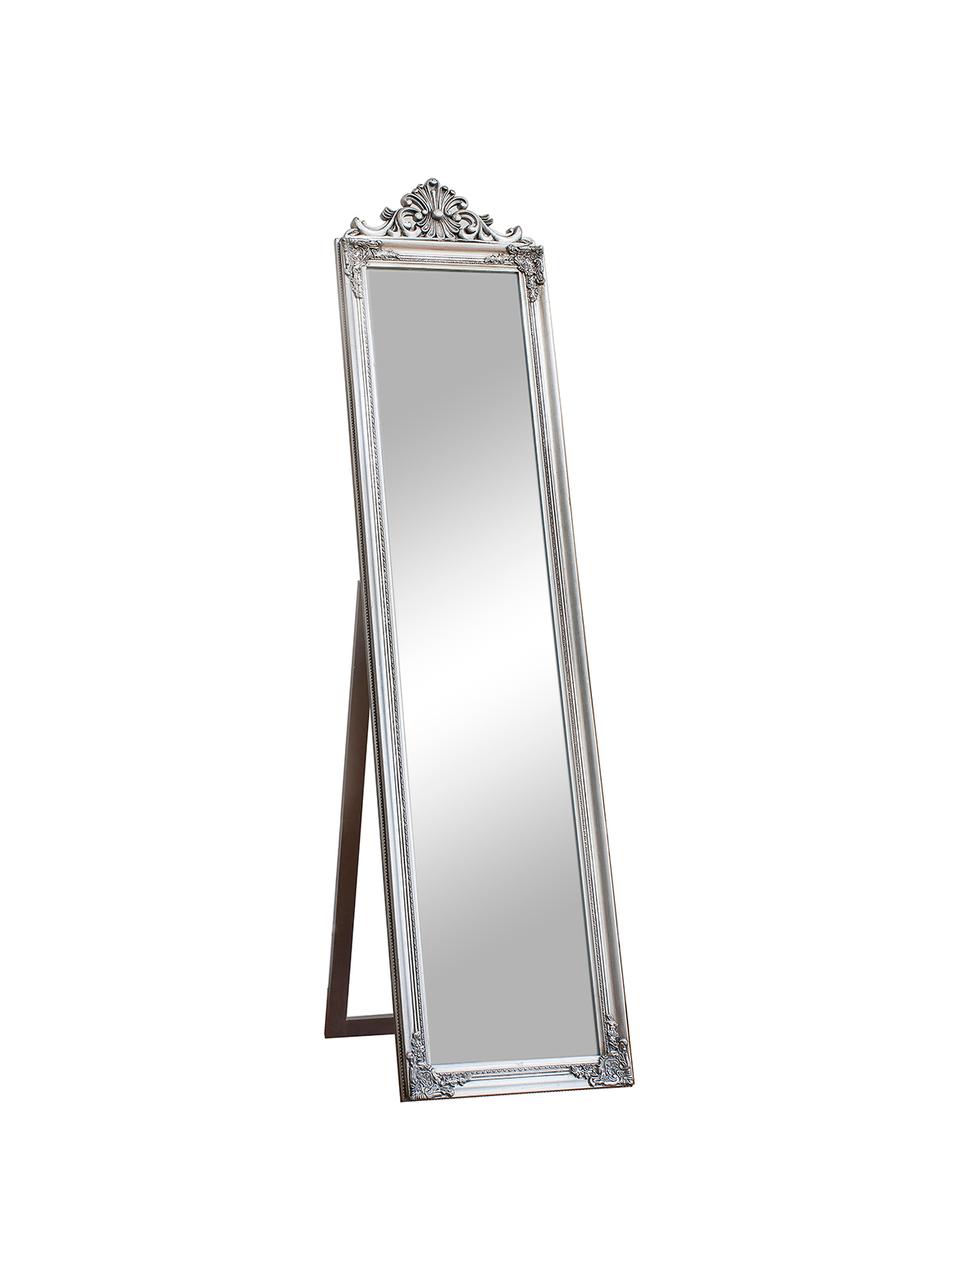 Eckiger Barock-Standspiegel Lambeth mit silbernem Rahmen, Rahmen: Polyresin, Spiegelfläche: Spiegelglas, Silberfarben, B 46 x H 179 cm